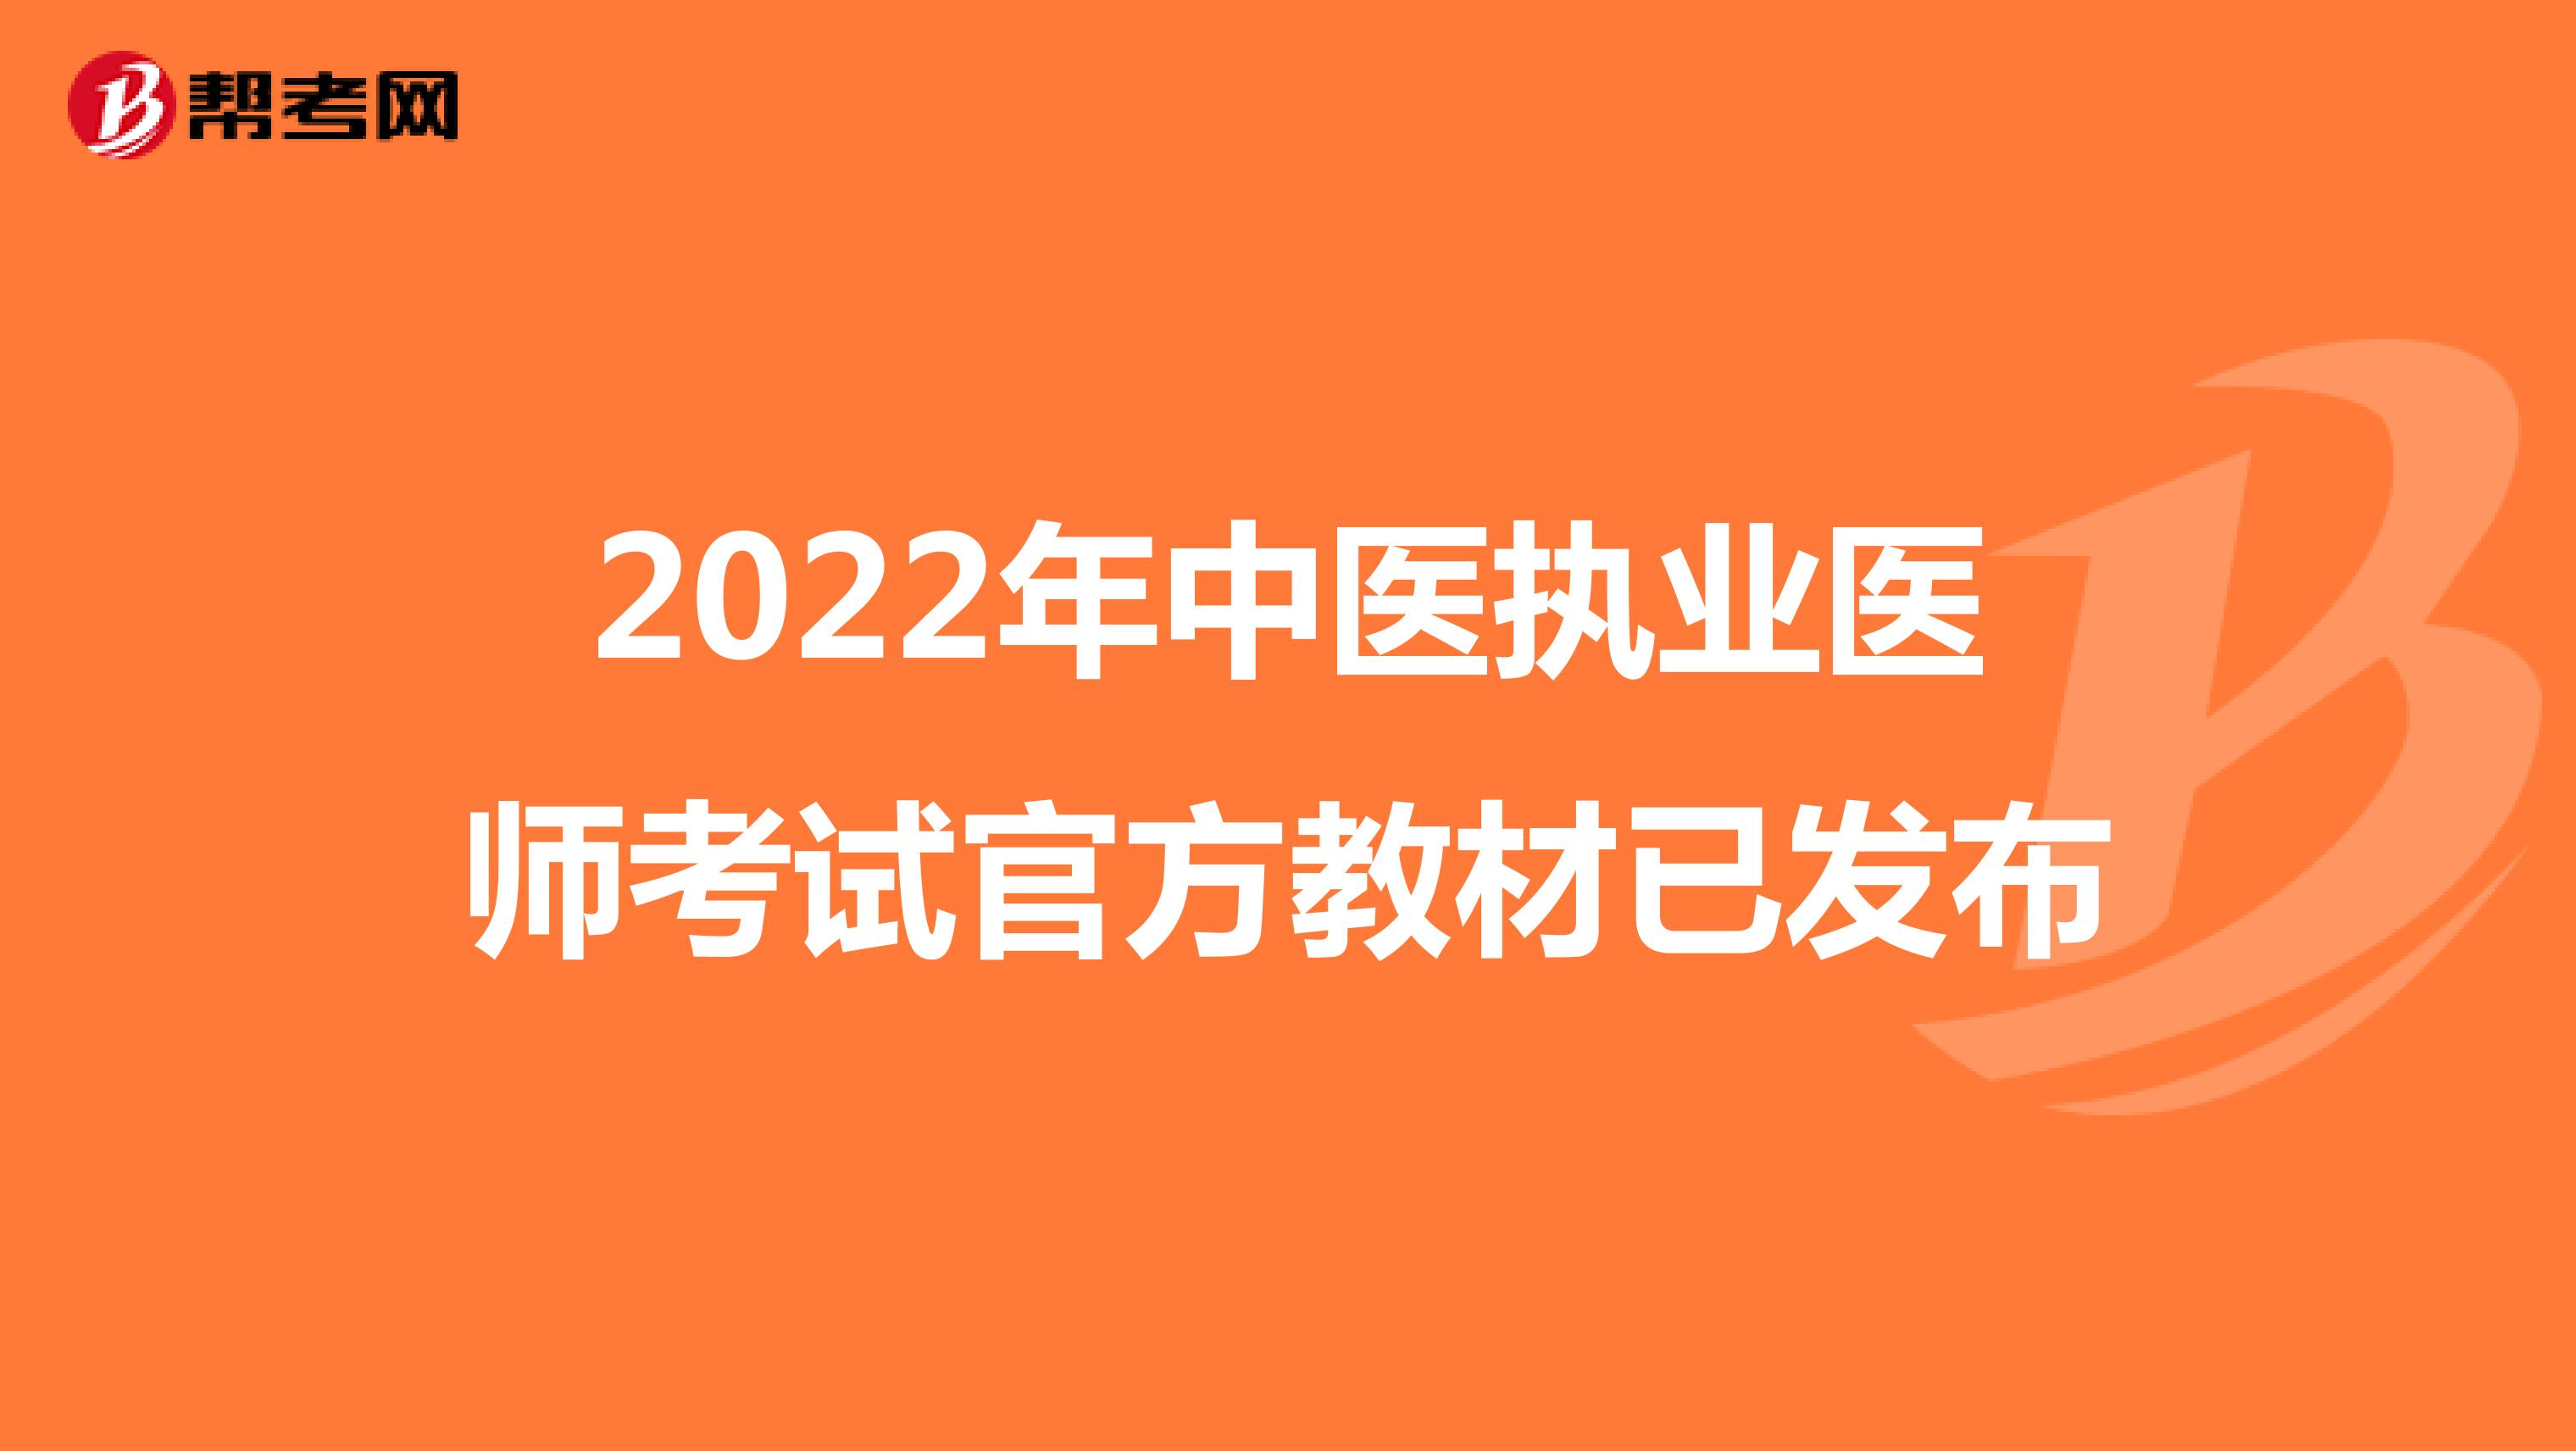 2022年中医执业医师考试官方教材已发布